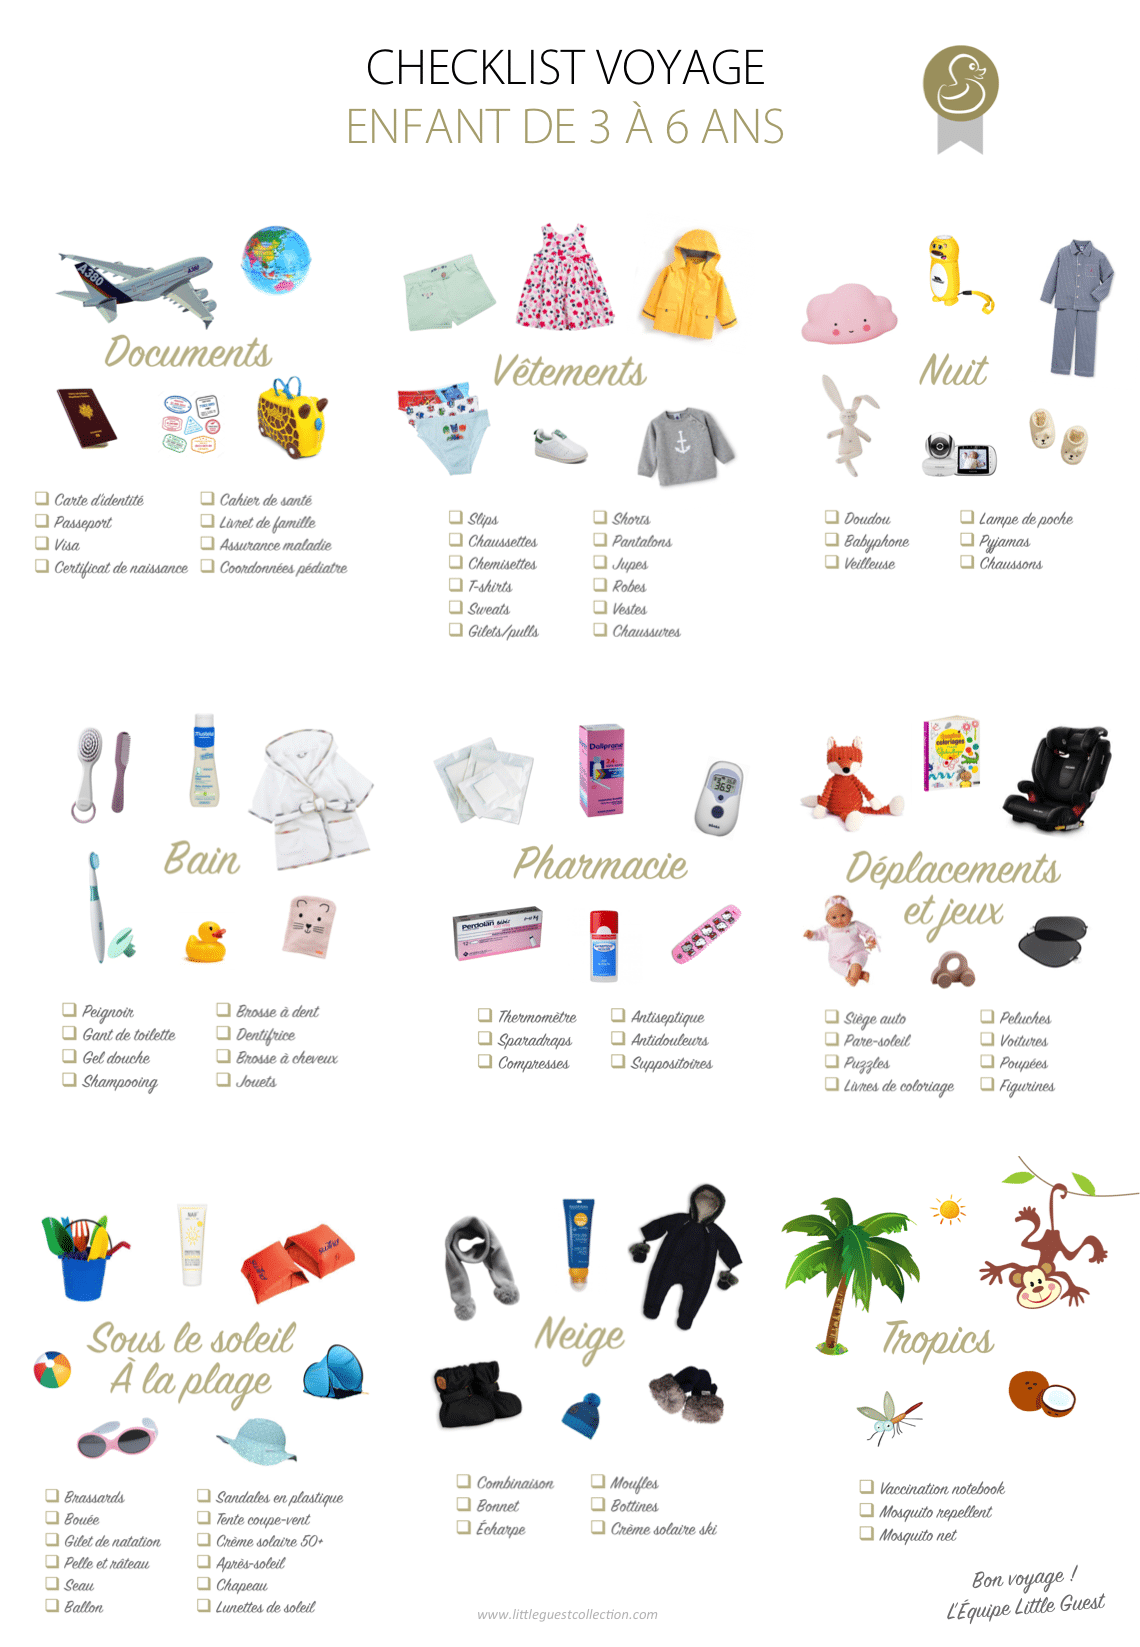 Checklist voyage pour les enfants de 3 à 6 ans (vêtements, documents, nuit, bain, pharmacie, déplacements, jeux, soleil, plage, neige et tropiques)